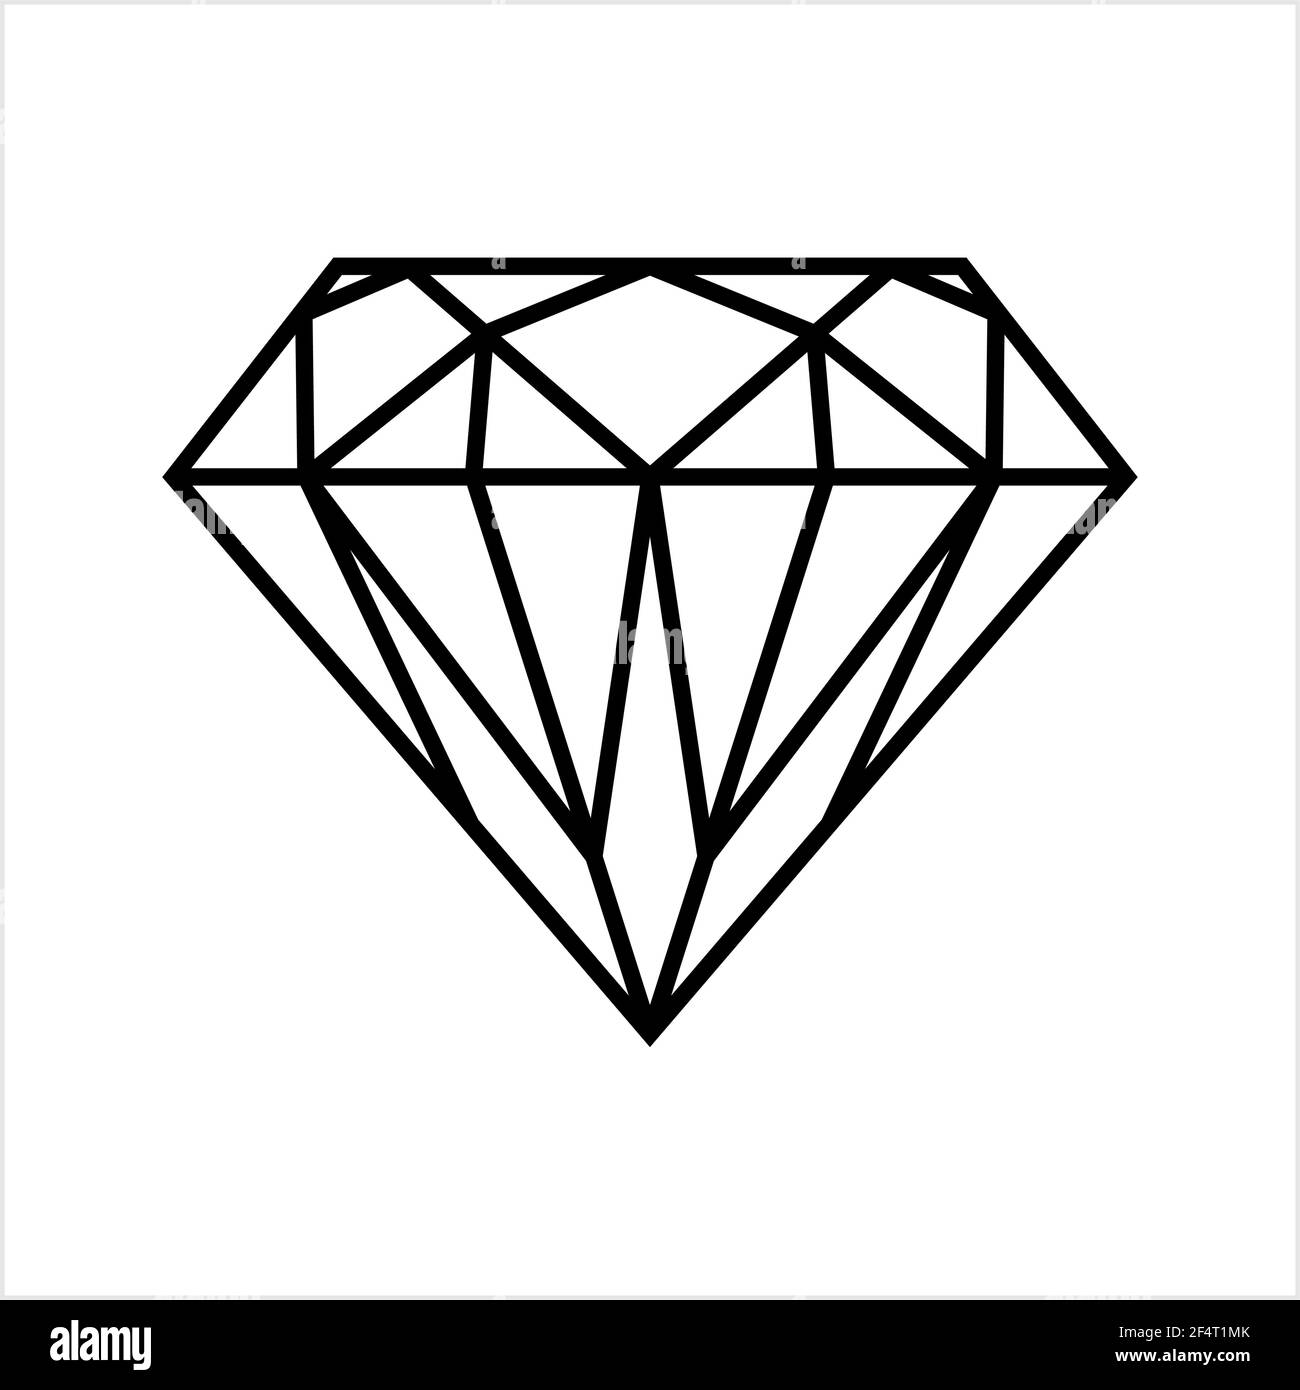 Diamond Icon, Diamond Shape Cut Face Vector Art Illustration Stock Vector